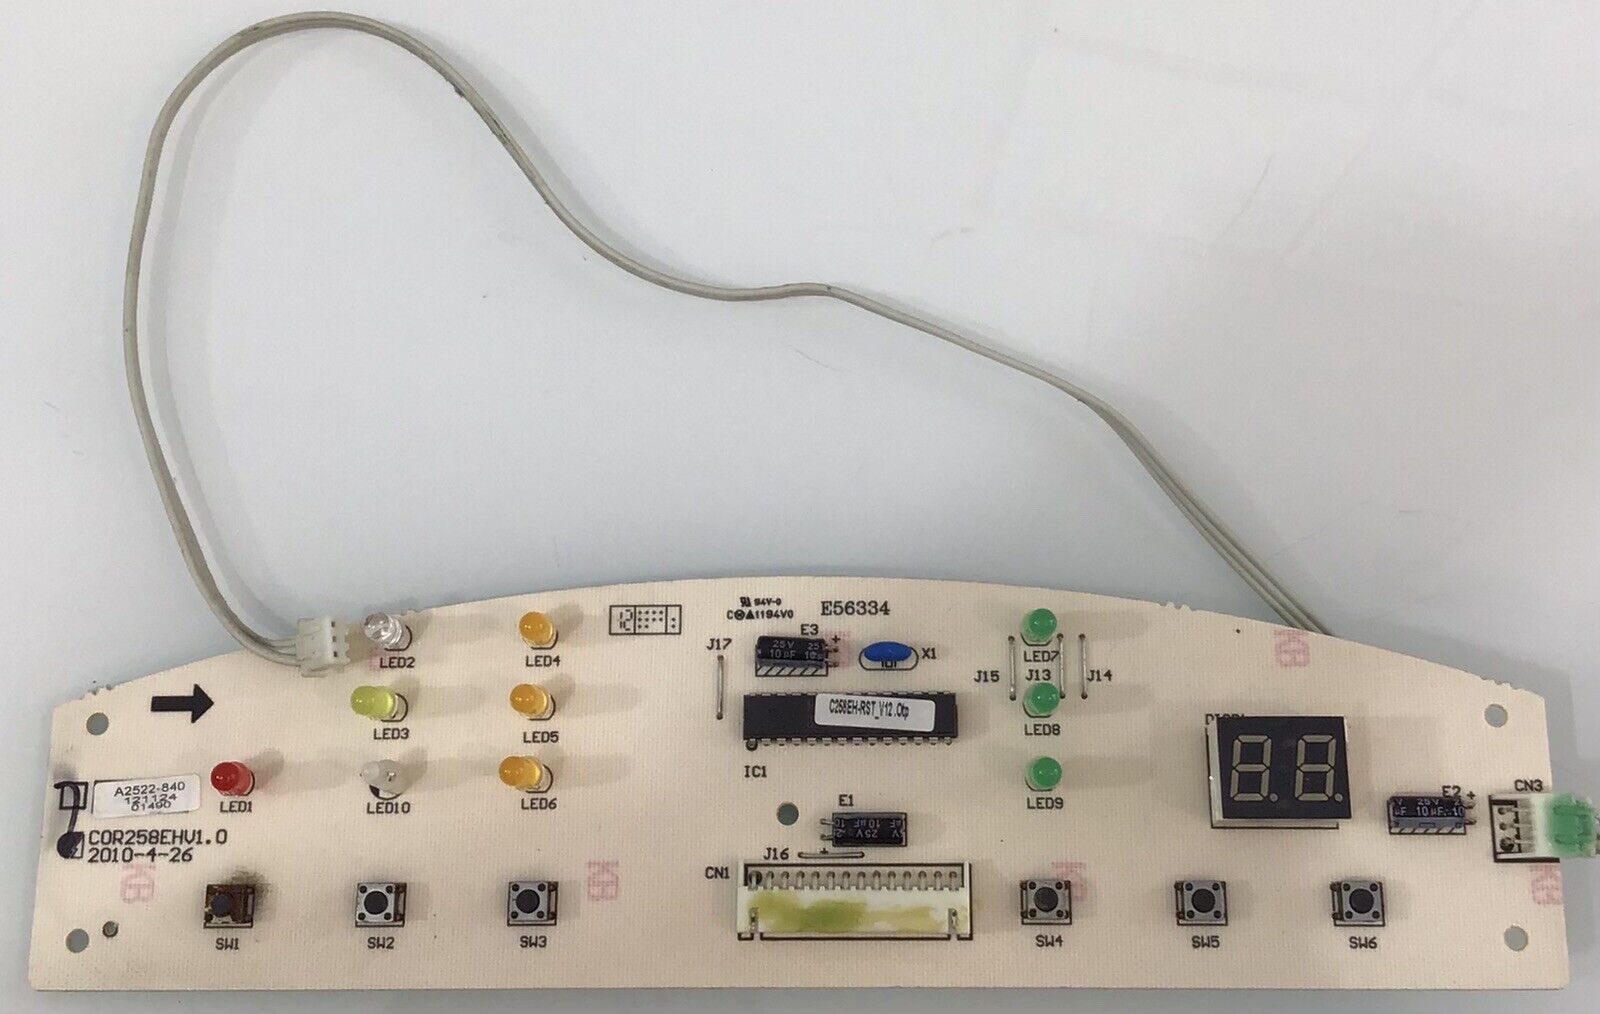 PH14B COR258EHV1.0 A2522-840 Friedrich  Conditioner  panel control board 